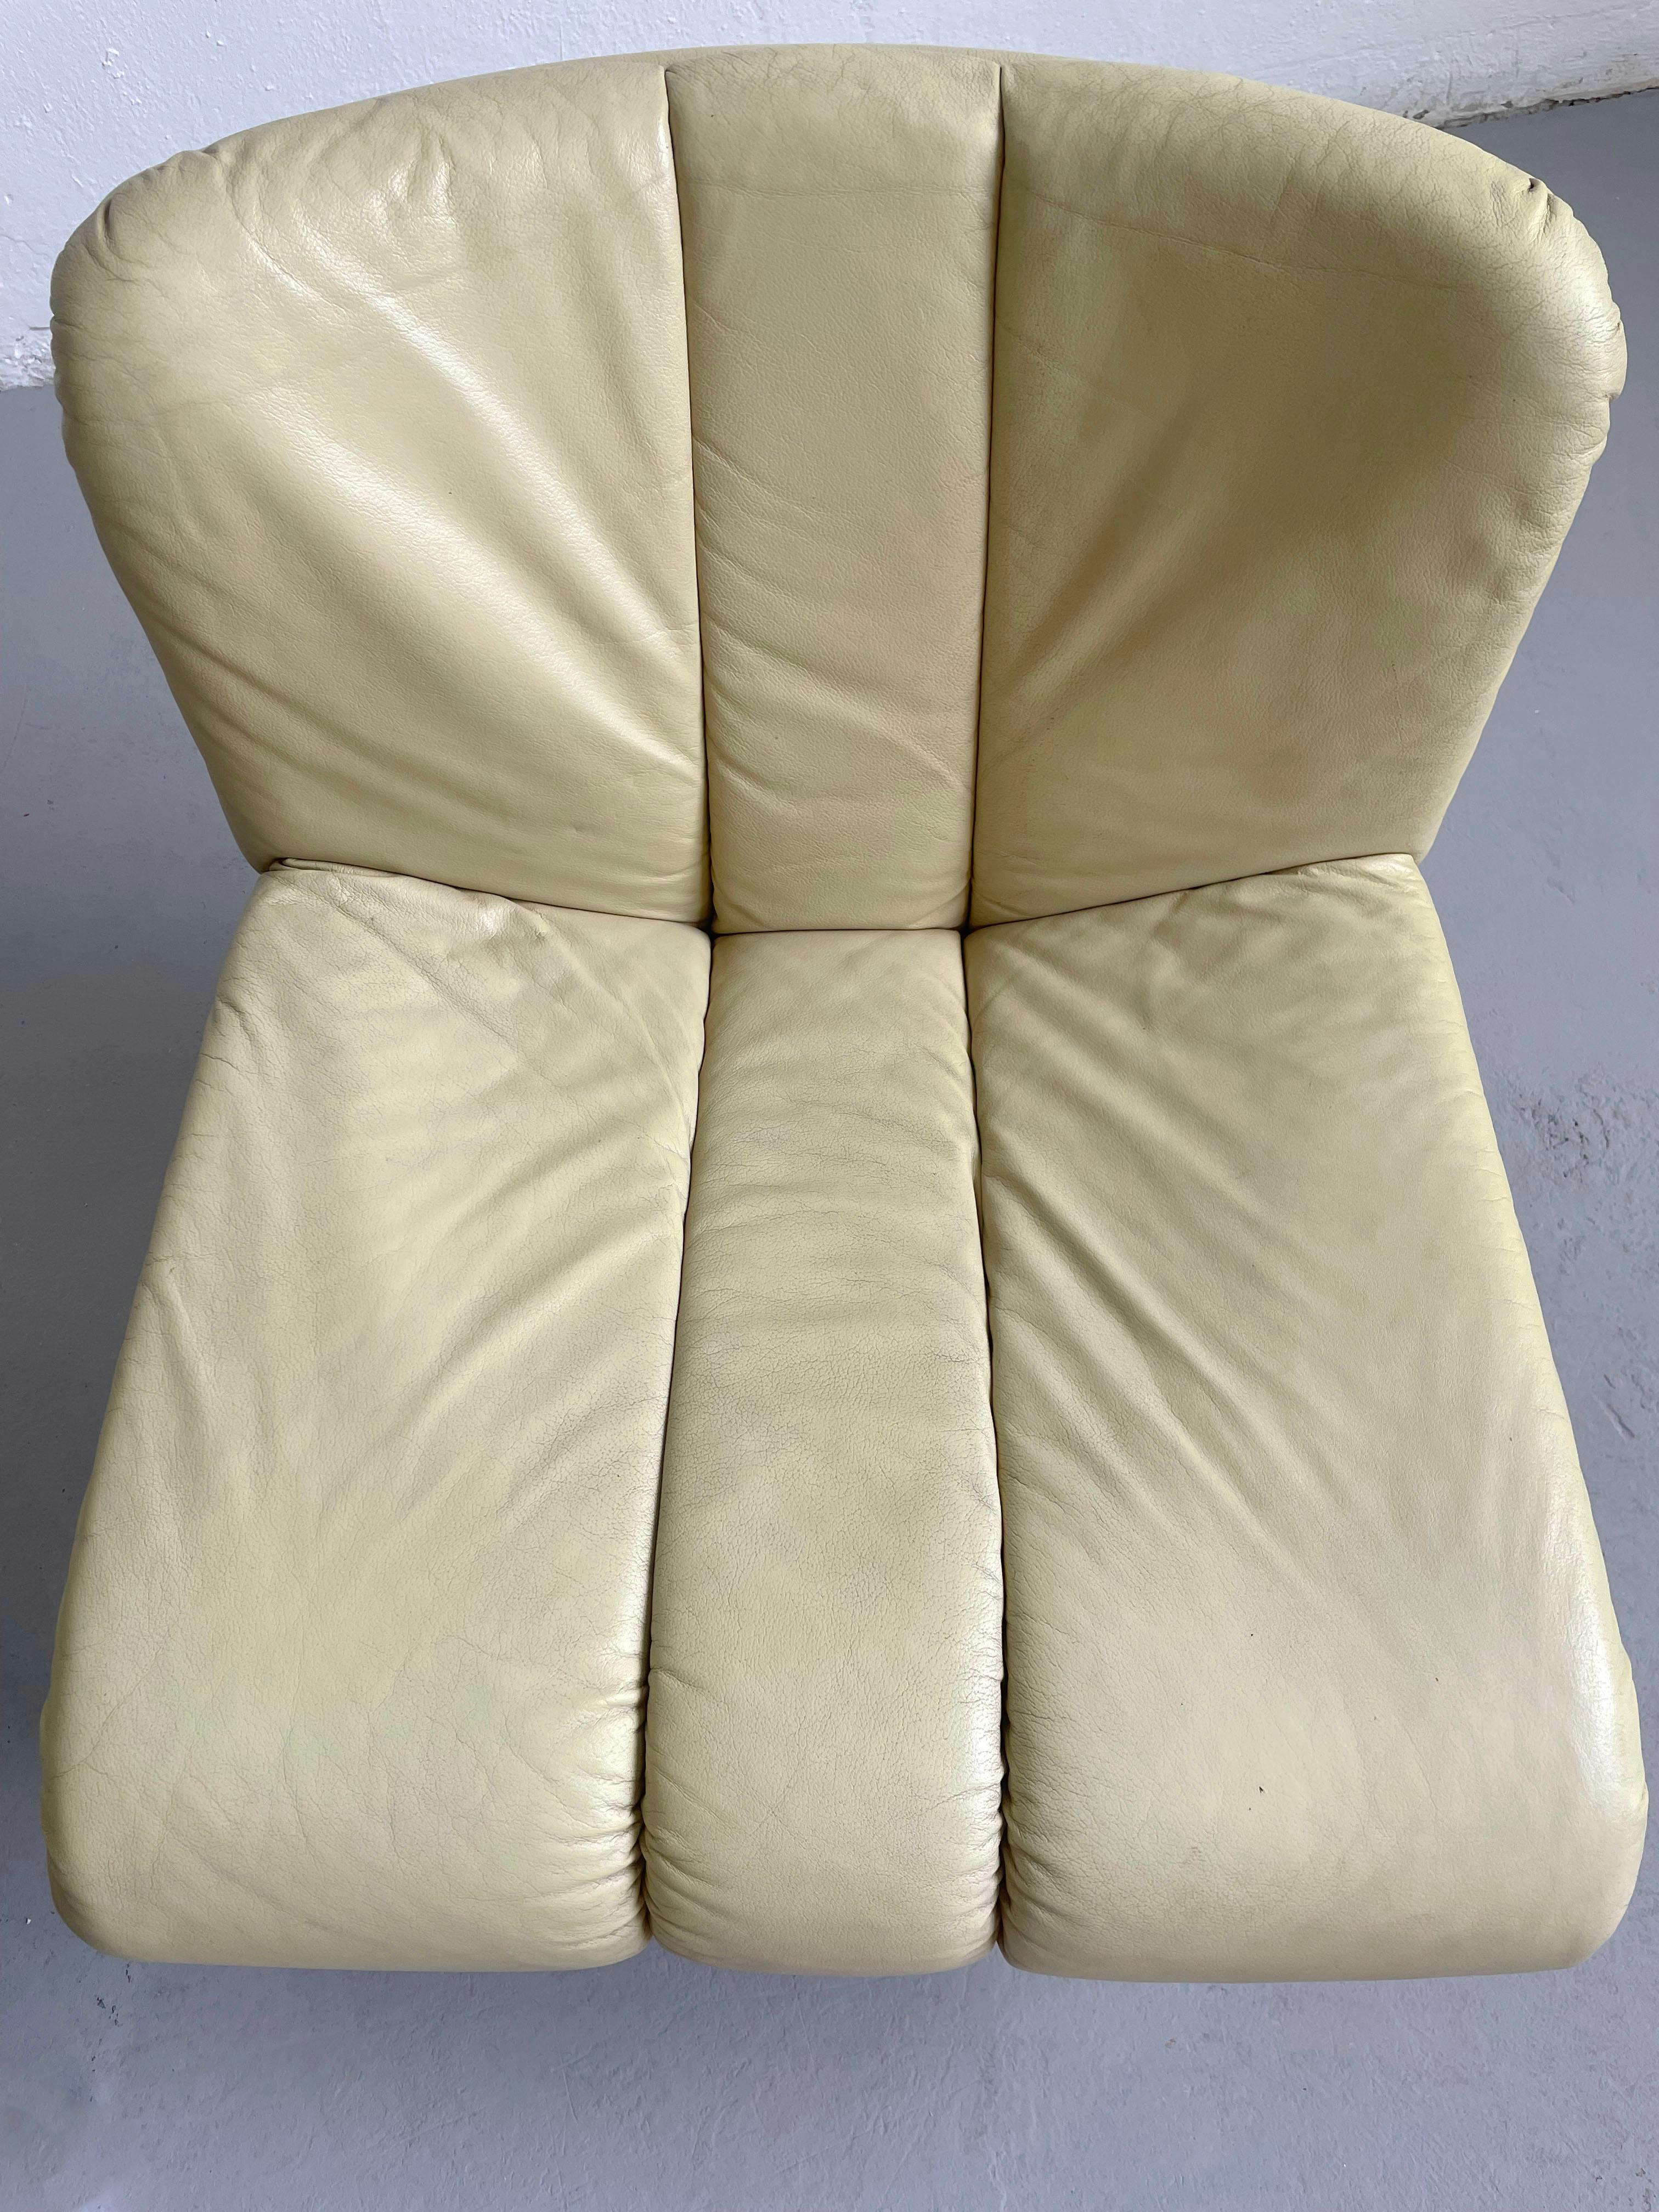 Hans Eichenberger Lounge Chair Model 1200 for Girsberger Eurochair, Set of 2 7